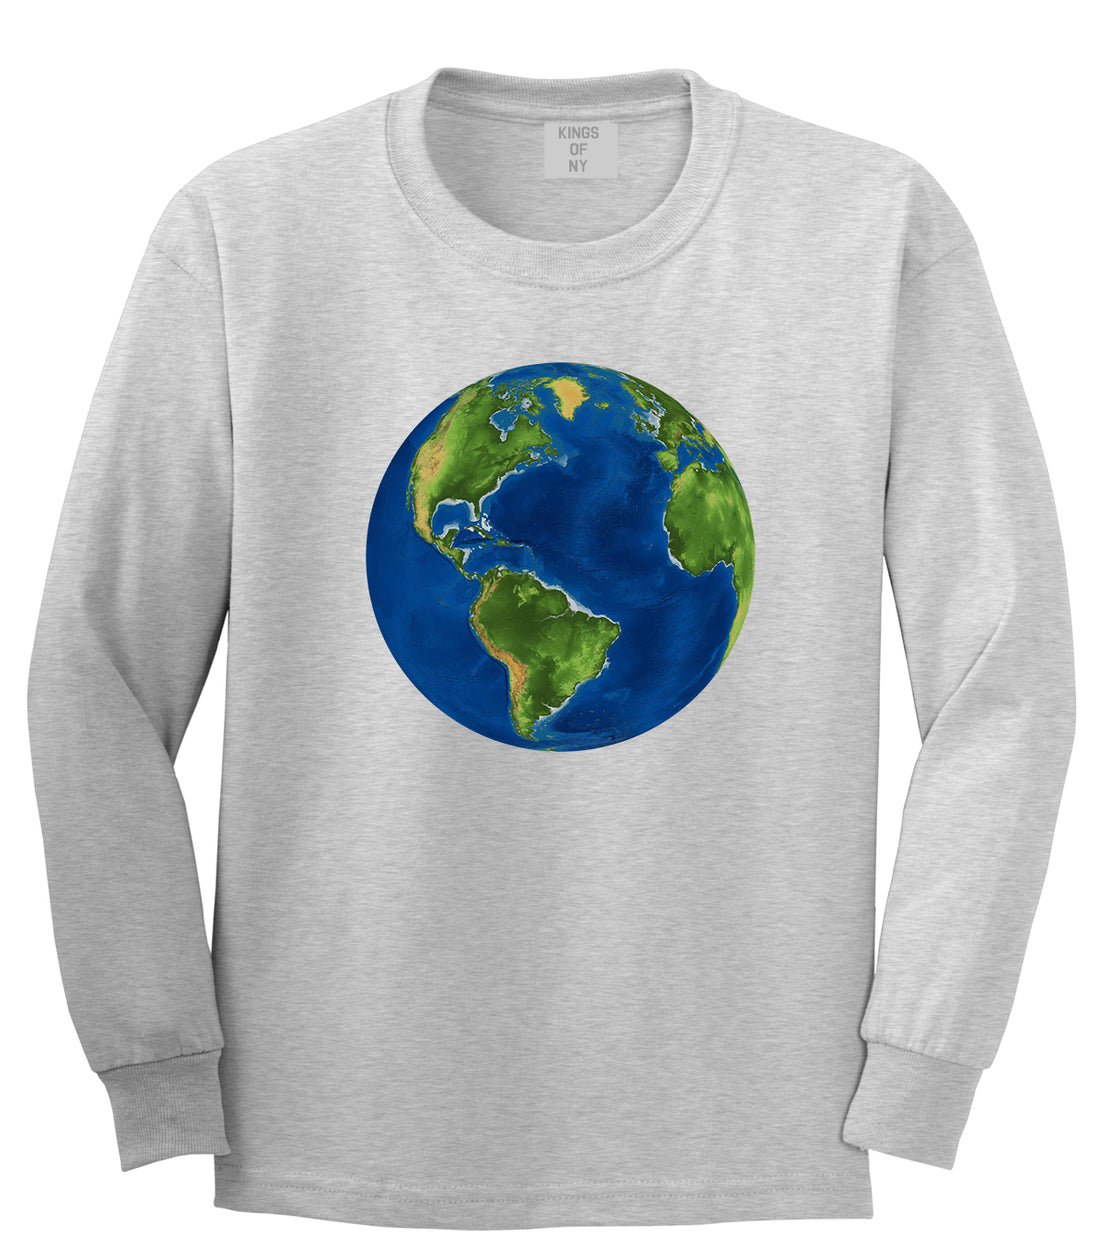 Earth Globe Mens Grey Long Sleeve T-Shirt by Kings Of NY